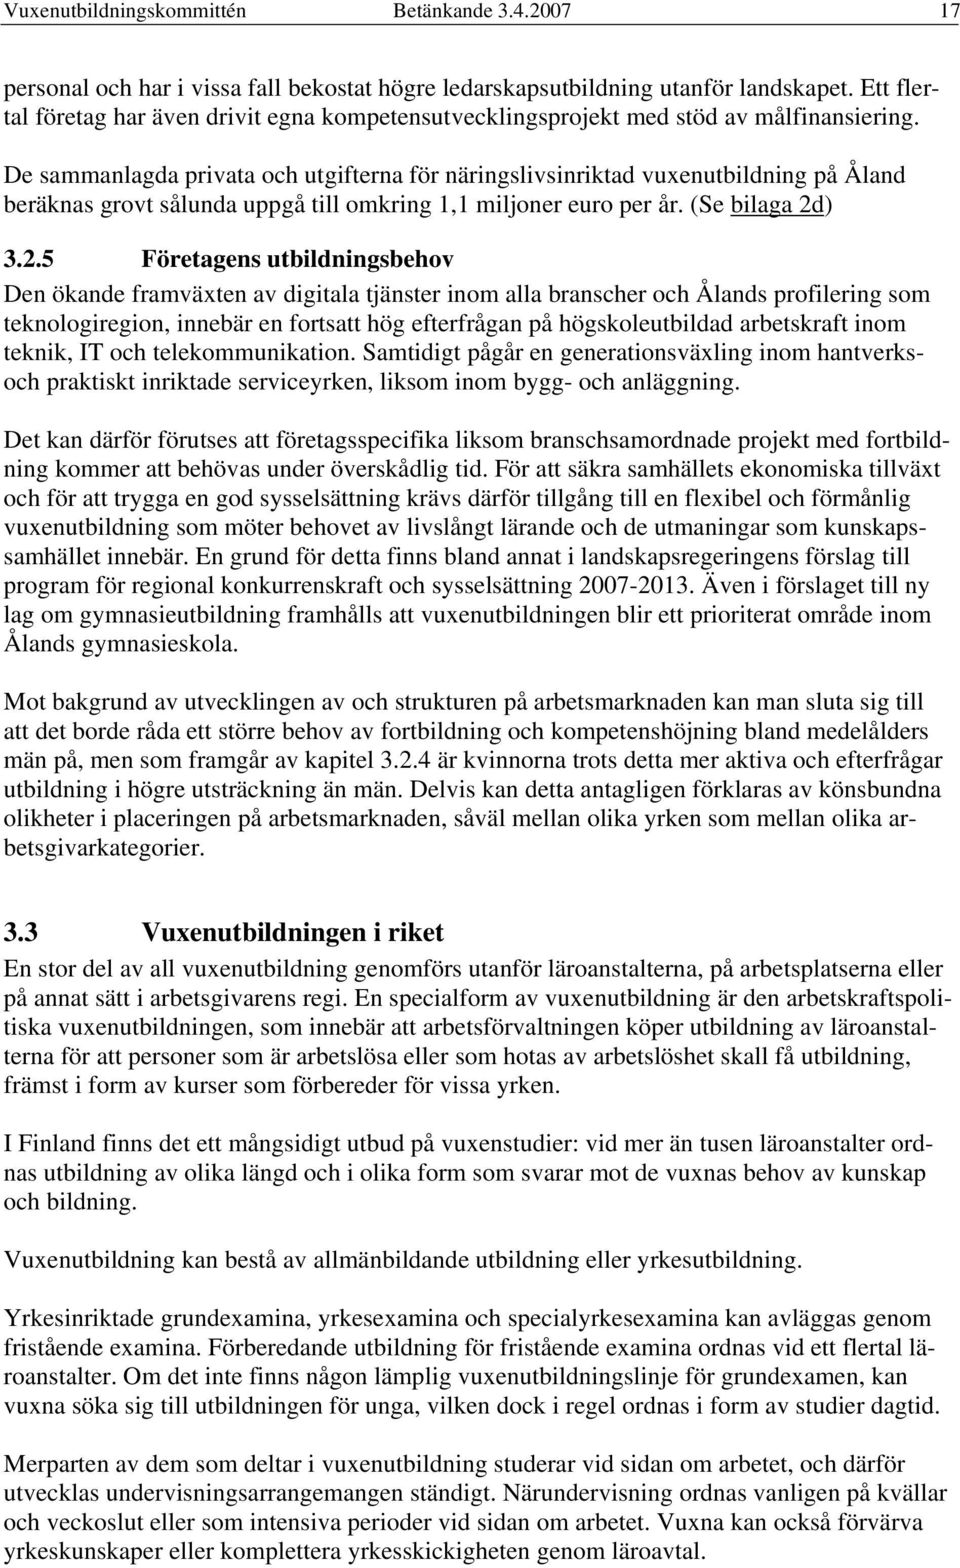 De sammanlagda privata och utgifterna för näringslivsinriktad vuxenutbildning på Åland beräknas grovt sålunda uppgå till omkring 1,1 miljoner euro per år. (Se bilaga 2d